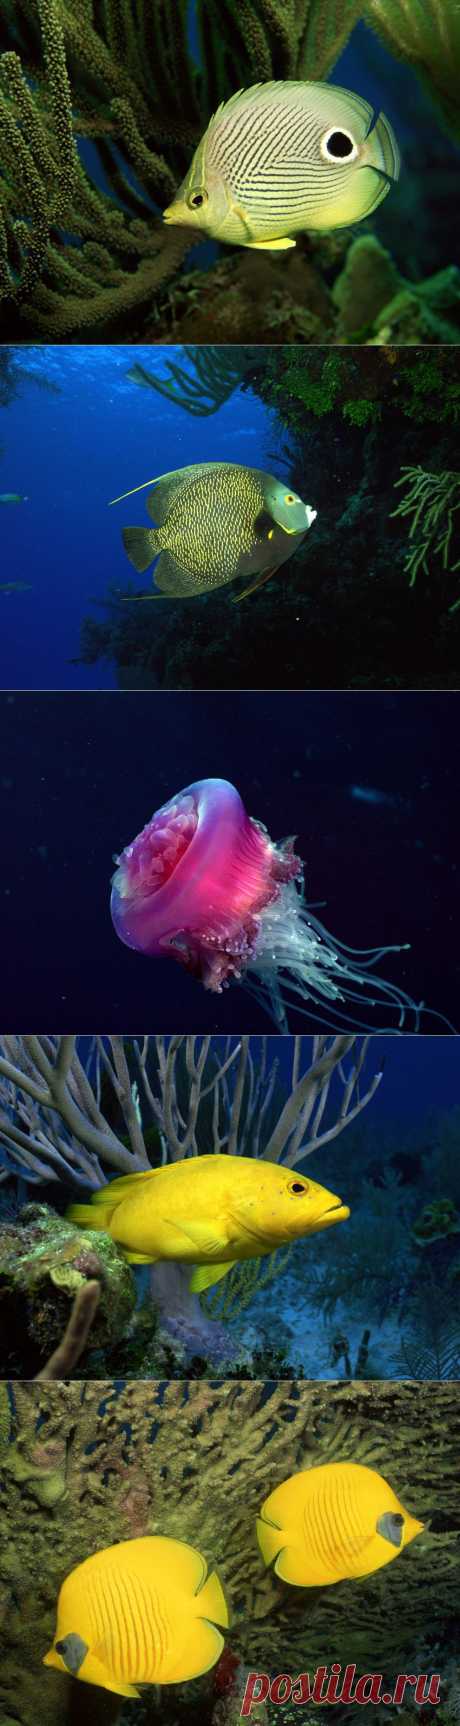 Обои для рабочего стола Красоты подводного мира : НОВОСТИ В ФОТОГРАФИЯХ